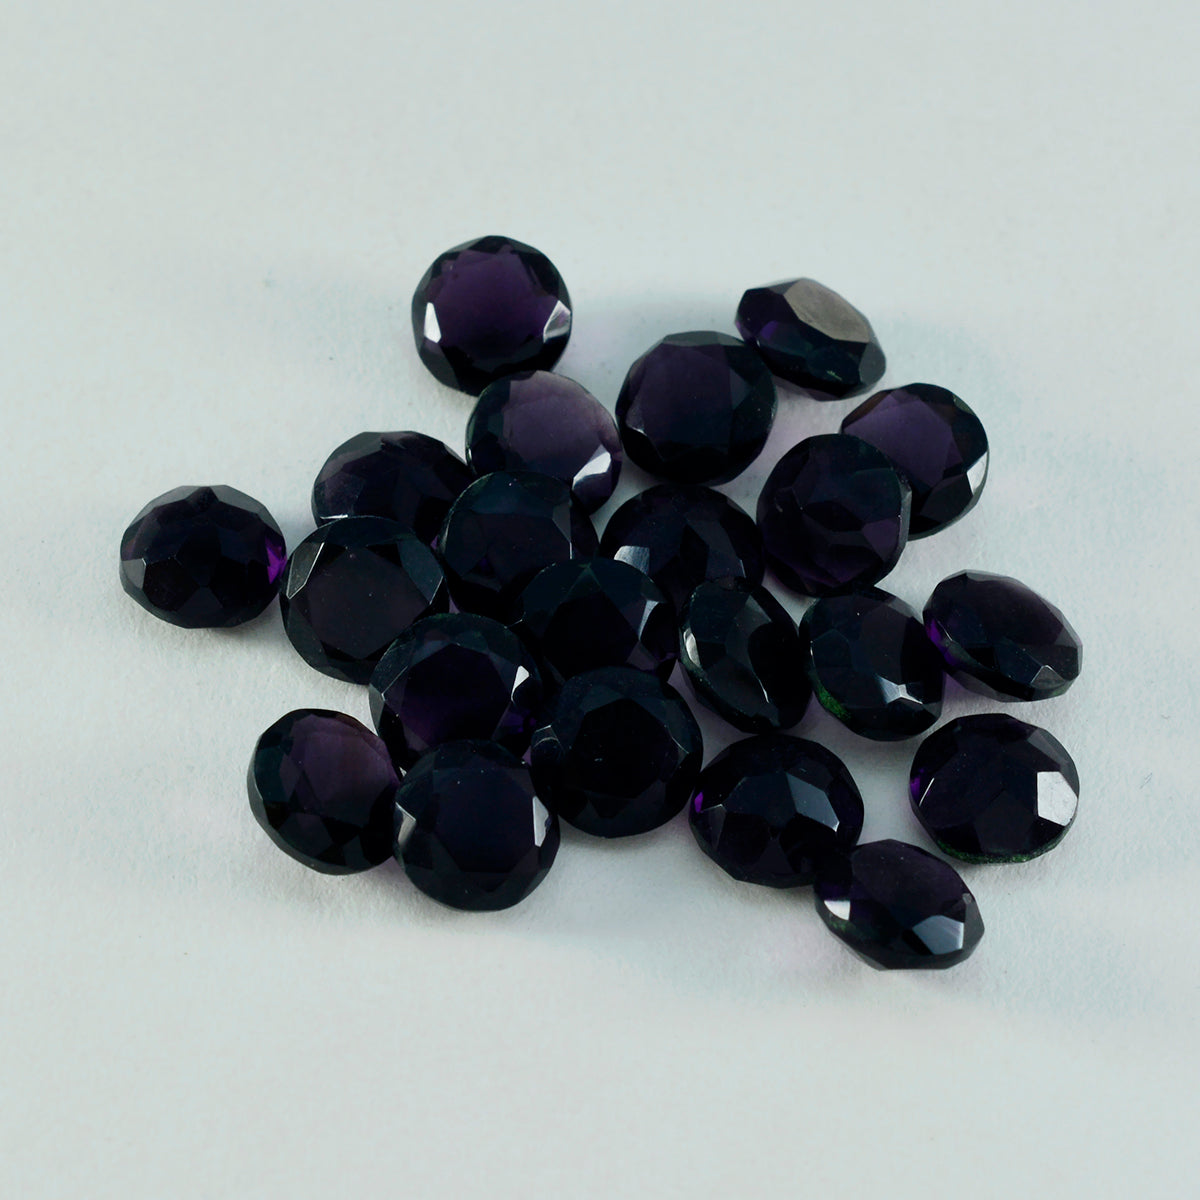 Riyogems 1pc améthyste violette cz facettes 8x8mm forme ronde belle qualité pierre en vrac